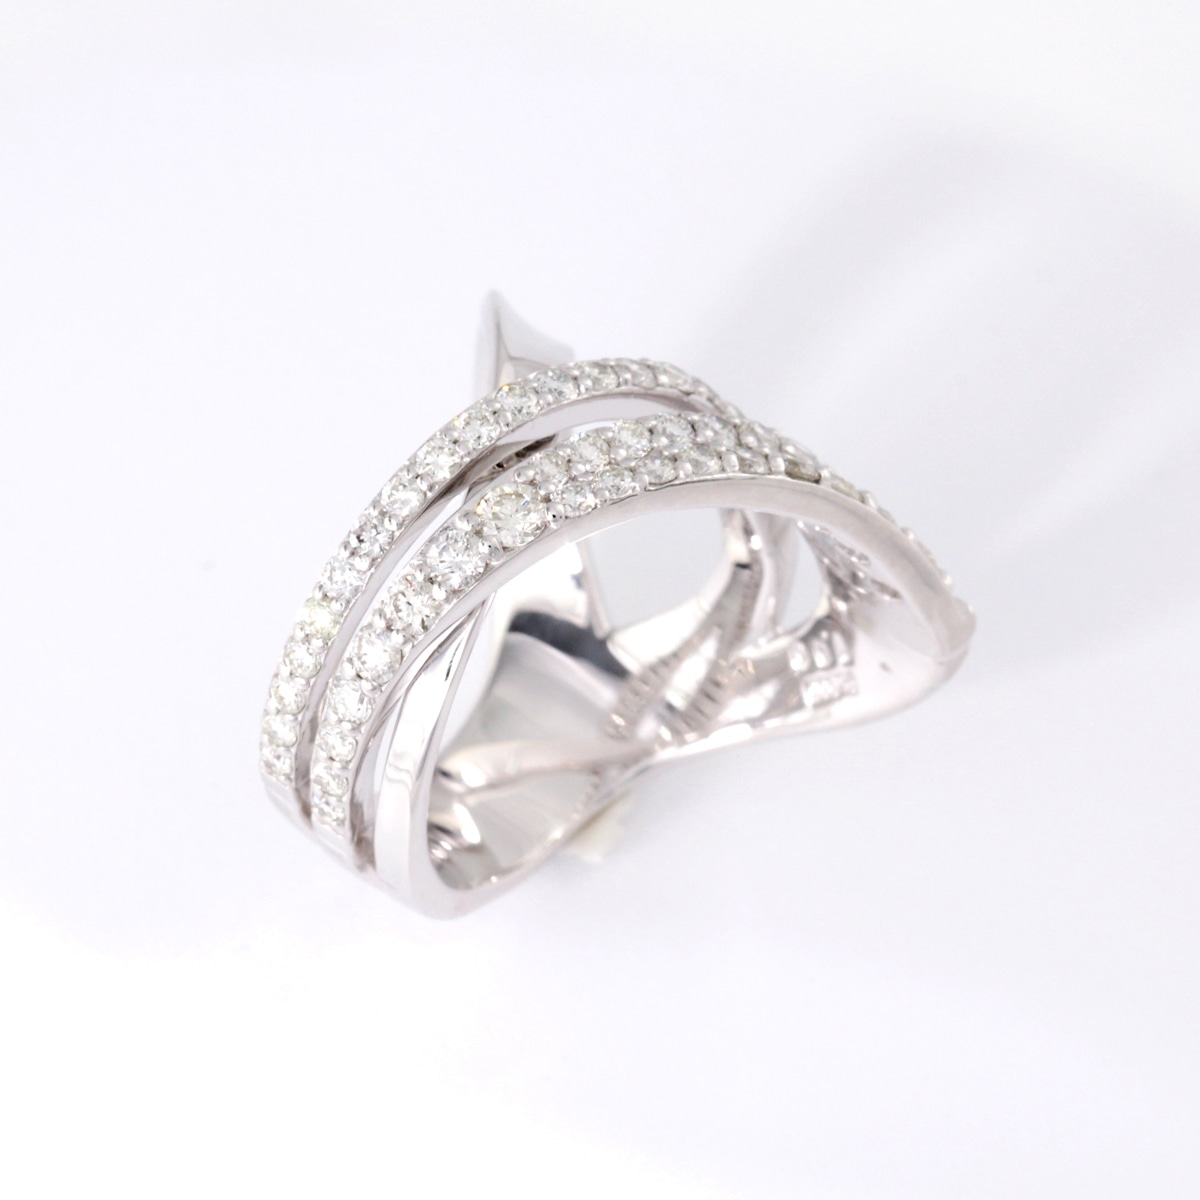 053013ctグラムダイアモンドの指輪/RING/ 0.53 / 0.13 ct. - リング(指輪)